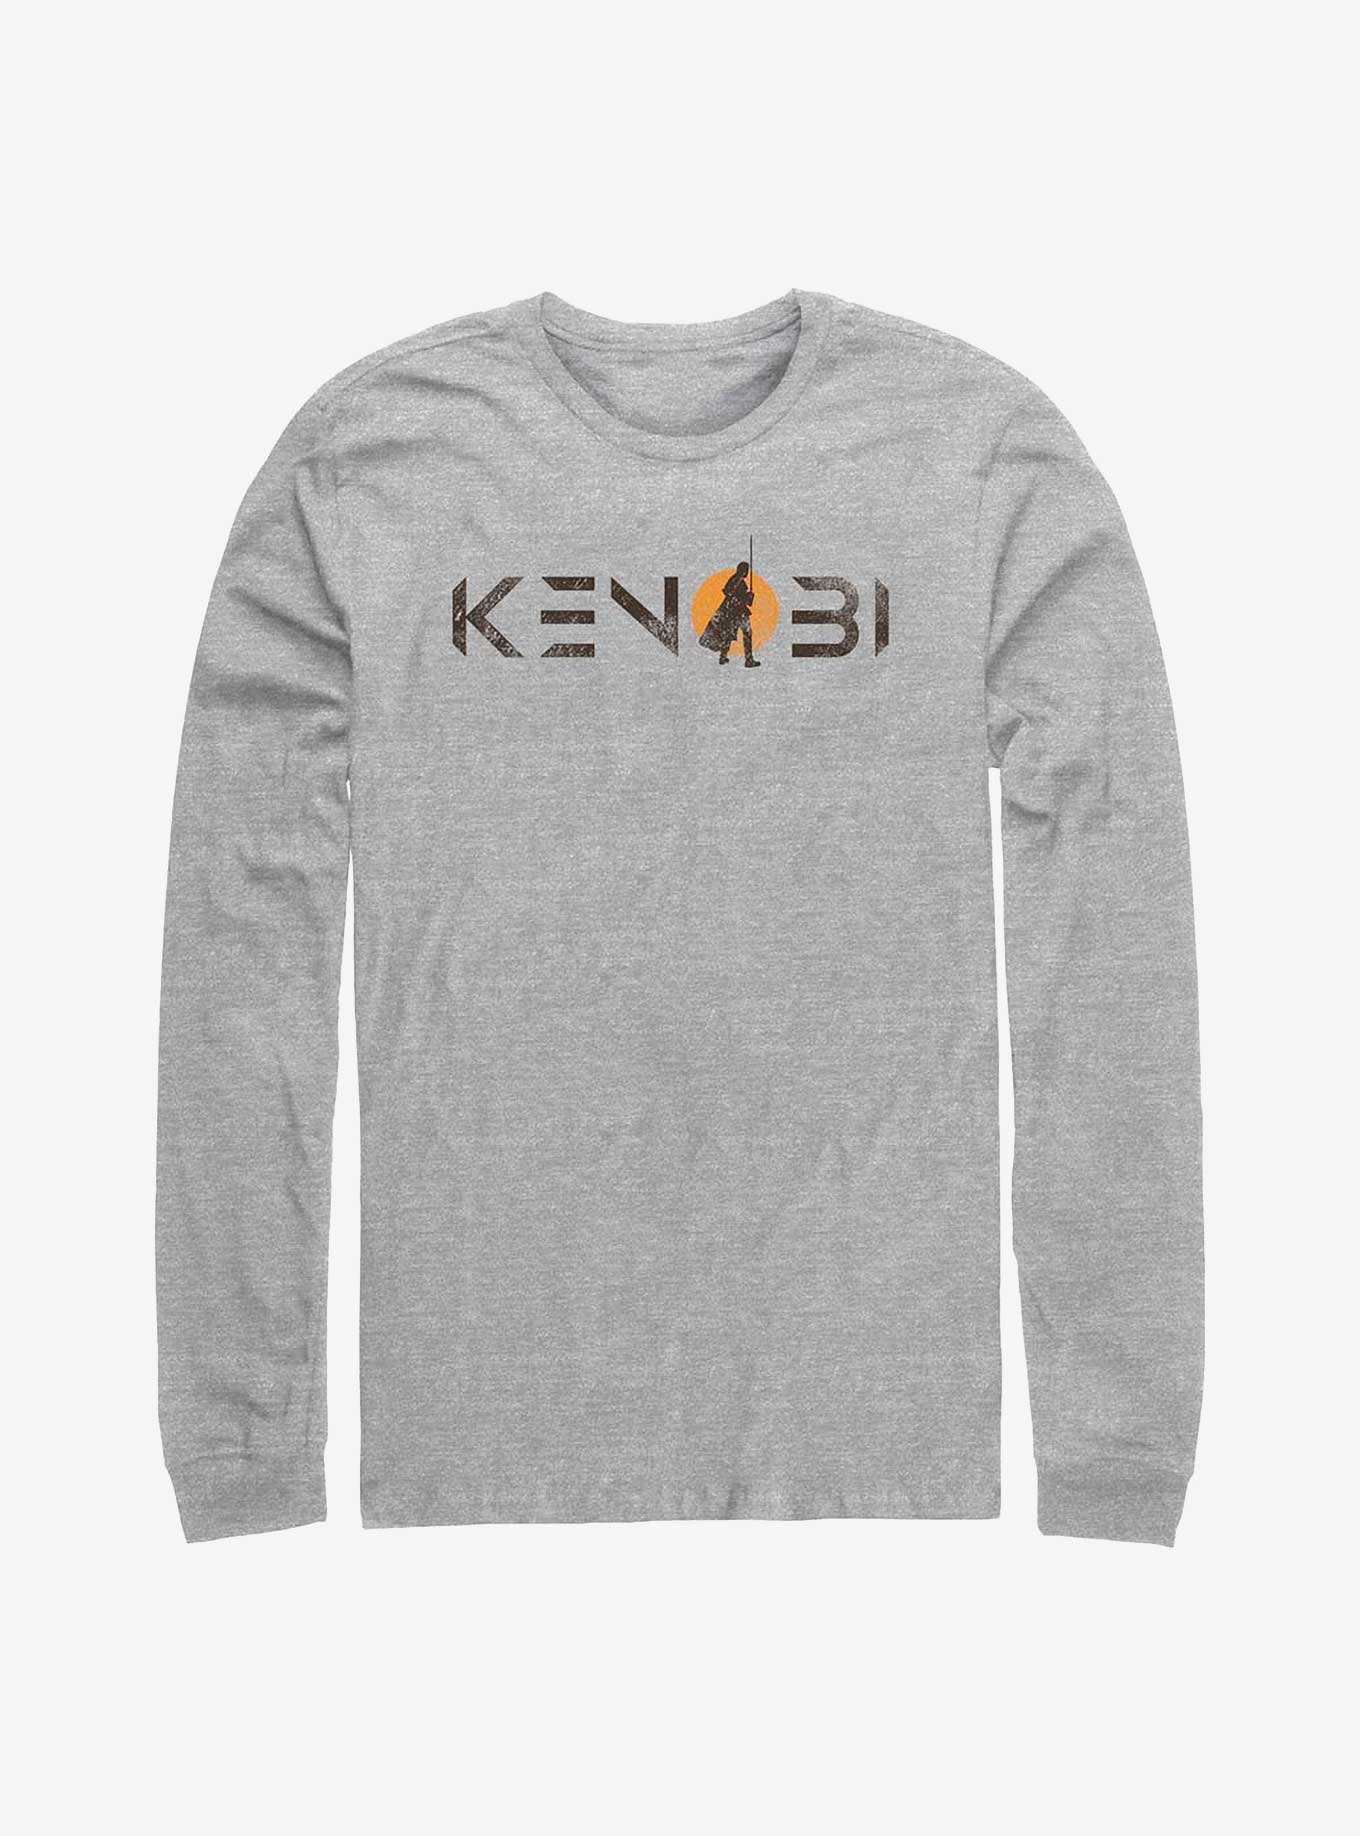 Star Wars Obi-Wan Kenobi Kenobi Single Sun Logo Long-Sleeve T-Shirt, , hi-res